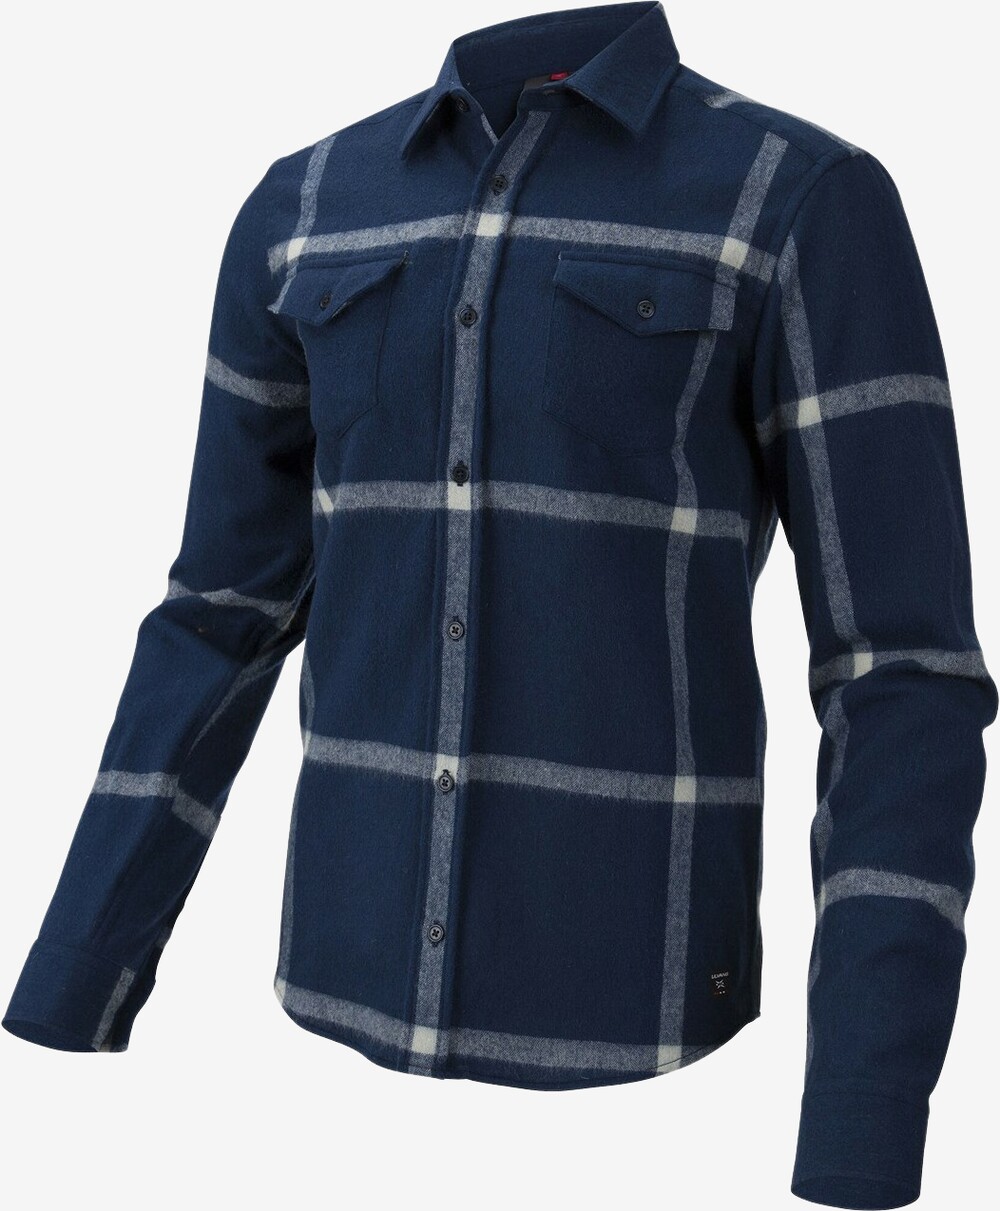 Se Ulvang - Yddin uldskjorte (Blå) - 2XL hos Friluft.dk